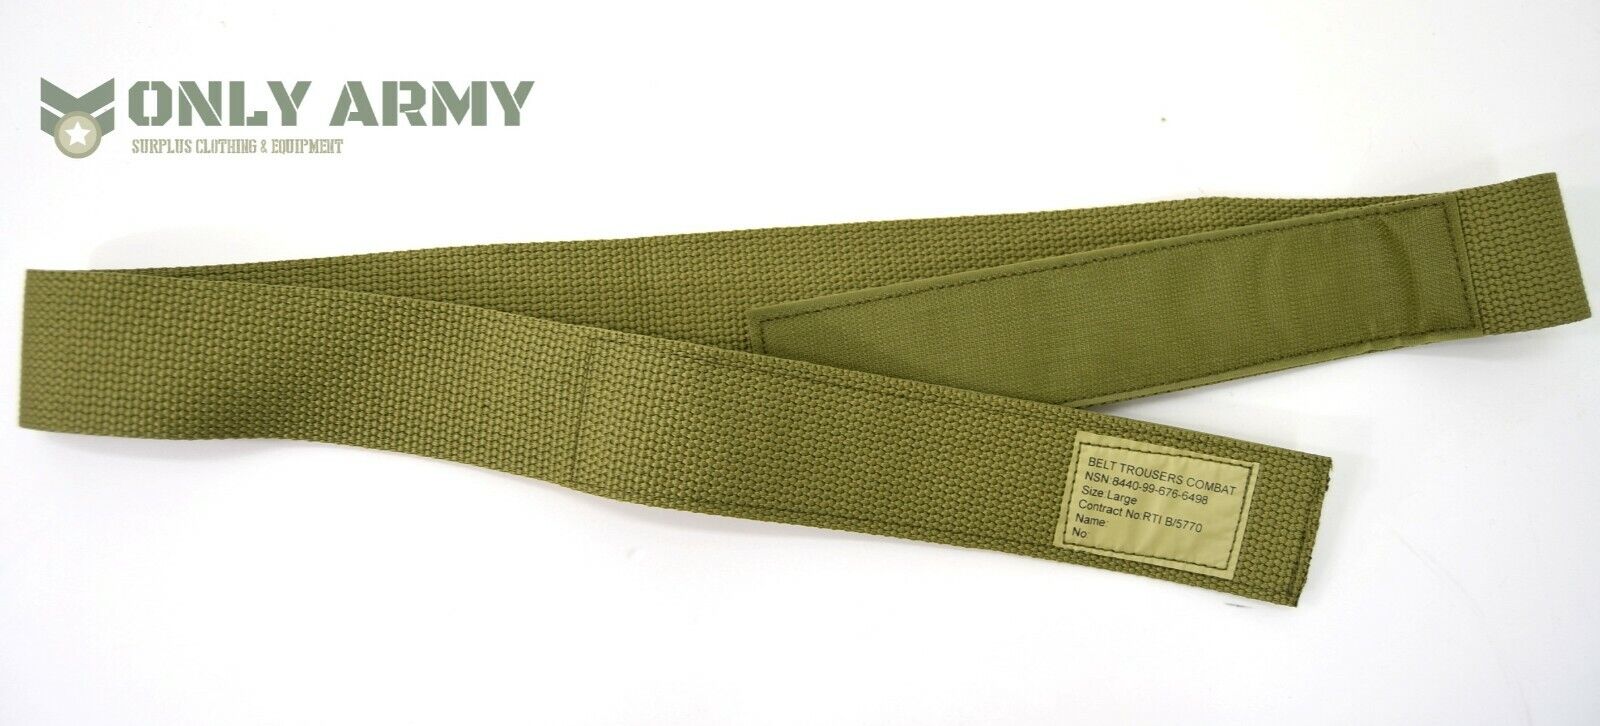 British Army PCS Combat Belt For Combat Trousers Velcr0 Closure MTP Multicam 